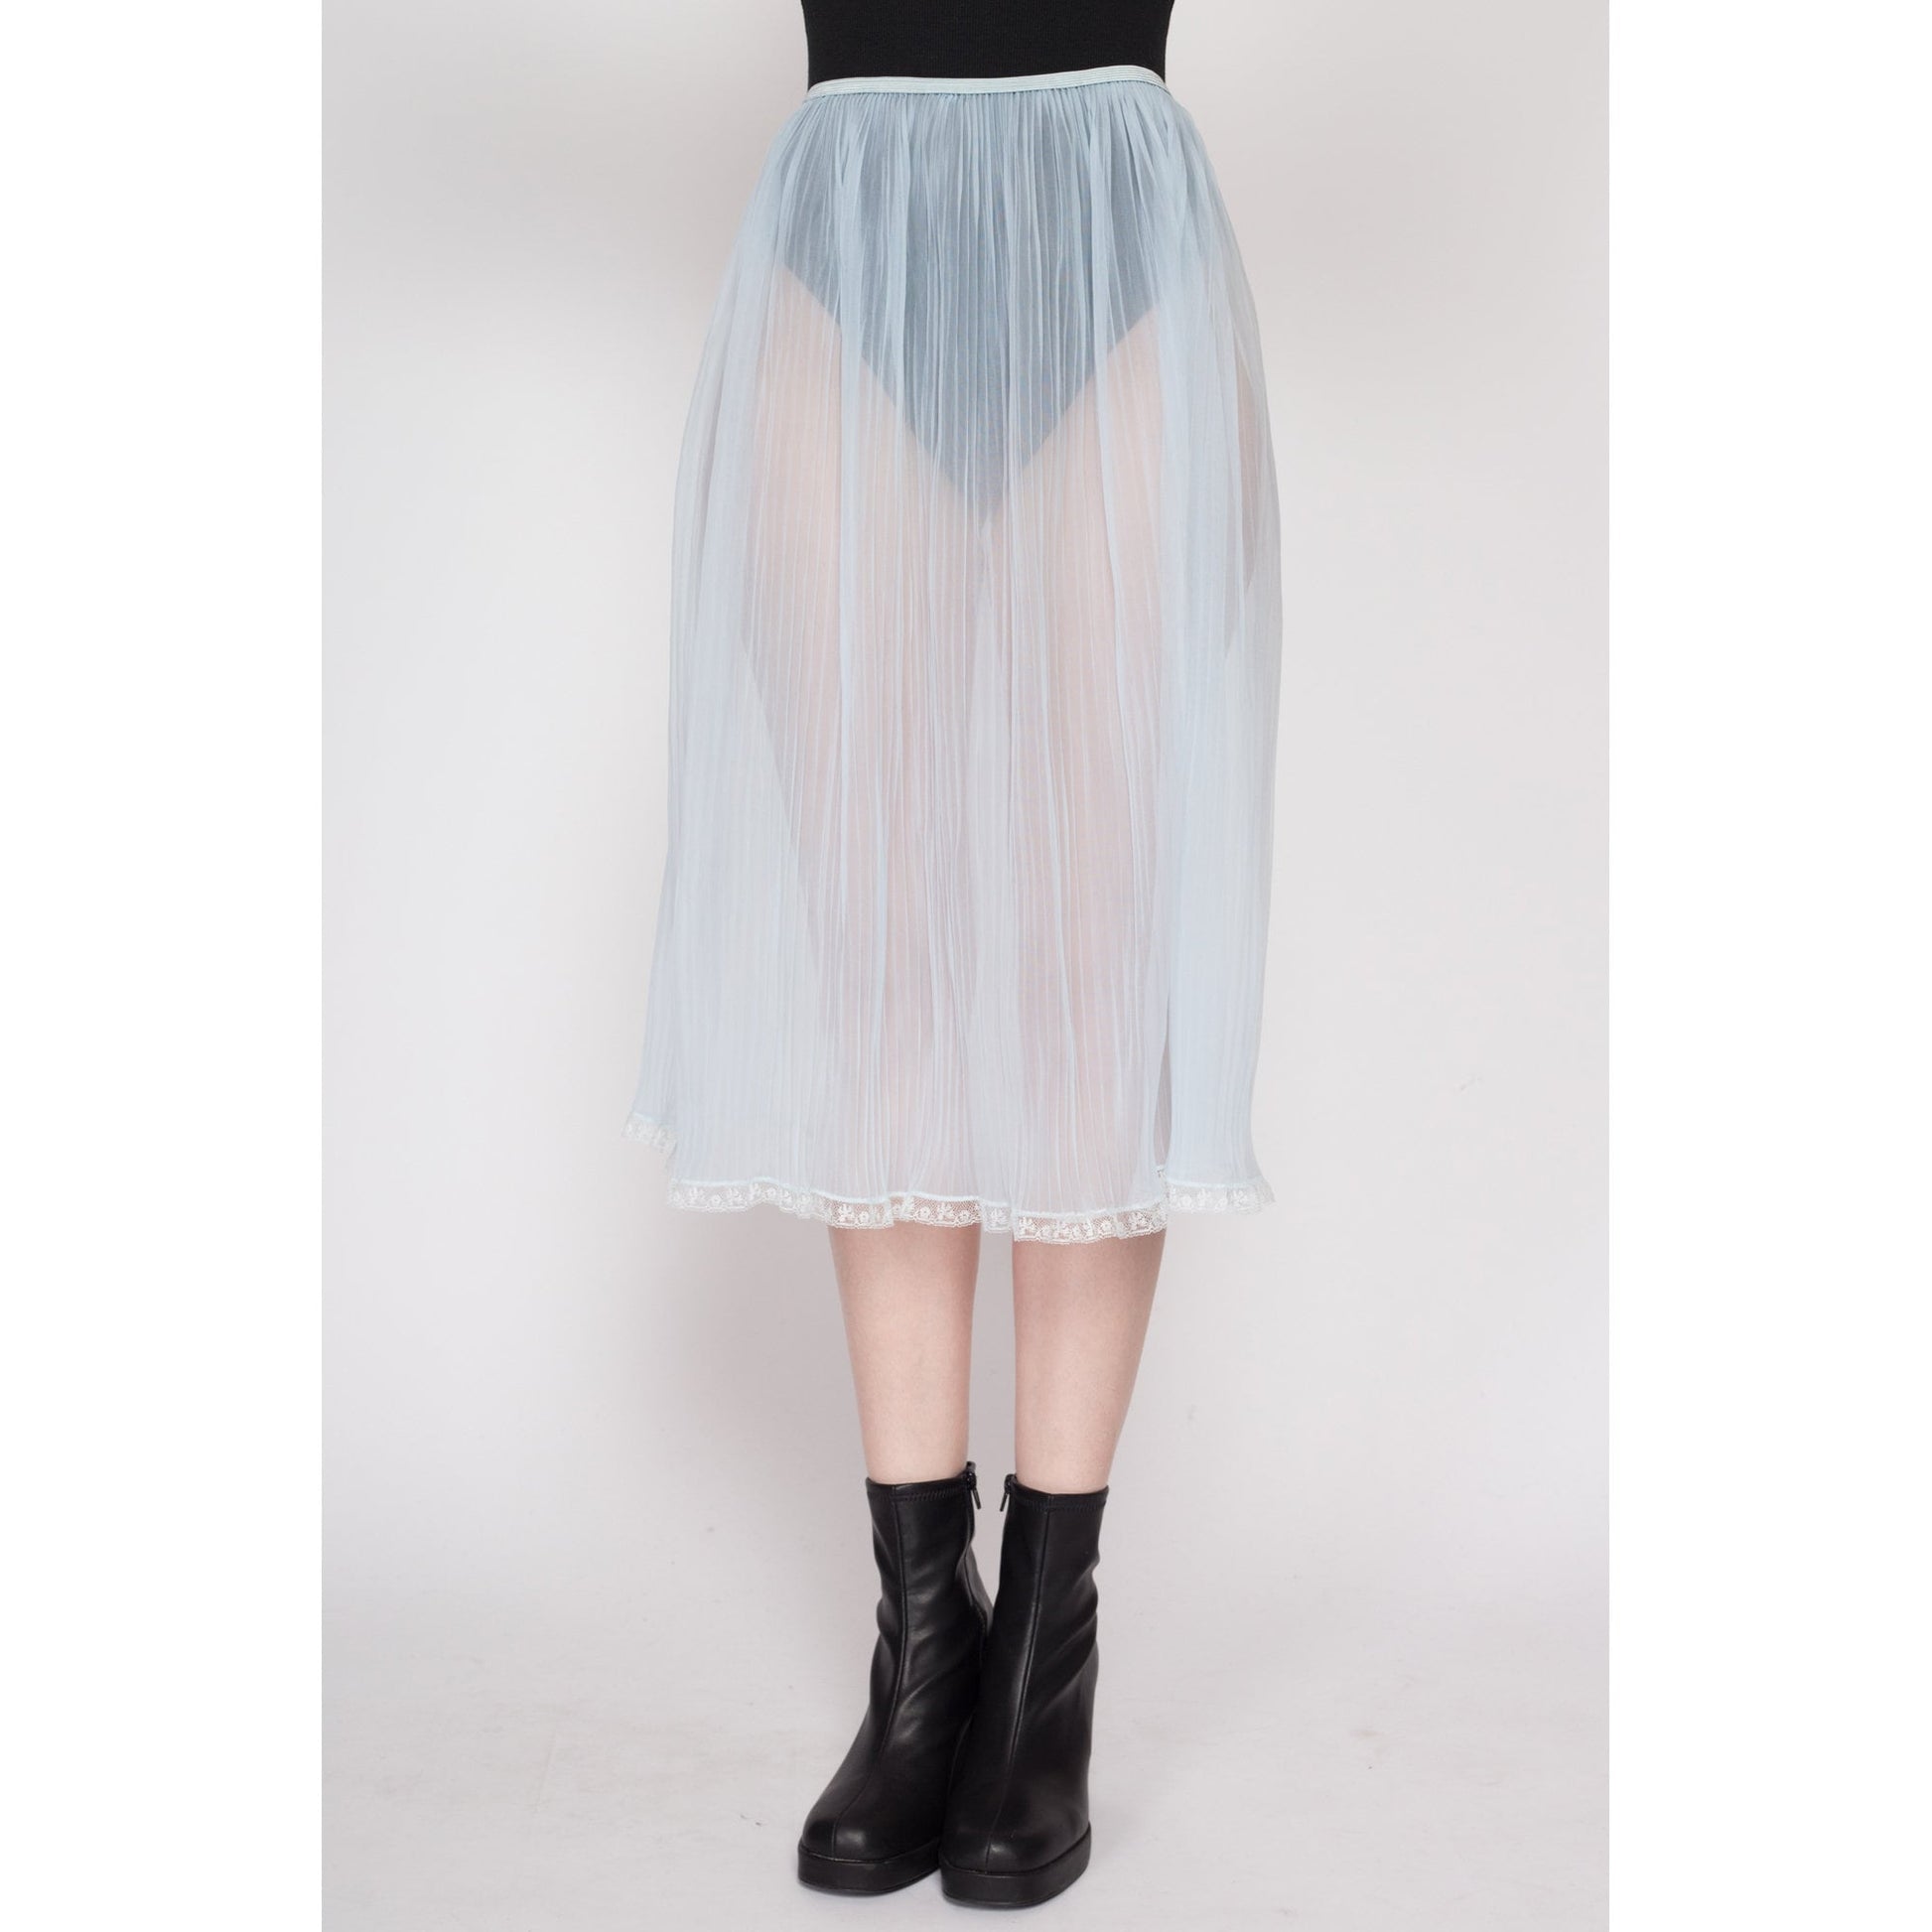 Vintage Sheer Black Lace Front Panties, Sheer 28 waist, 1960s